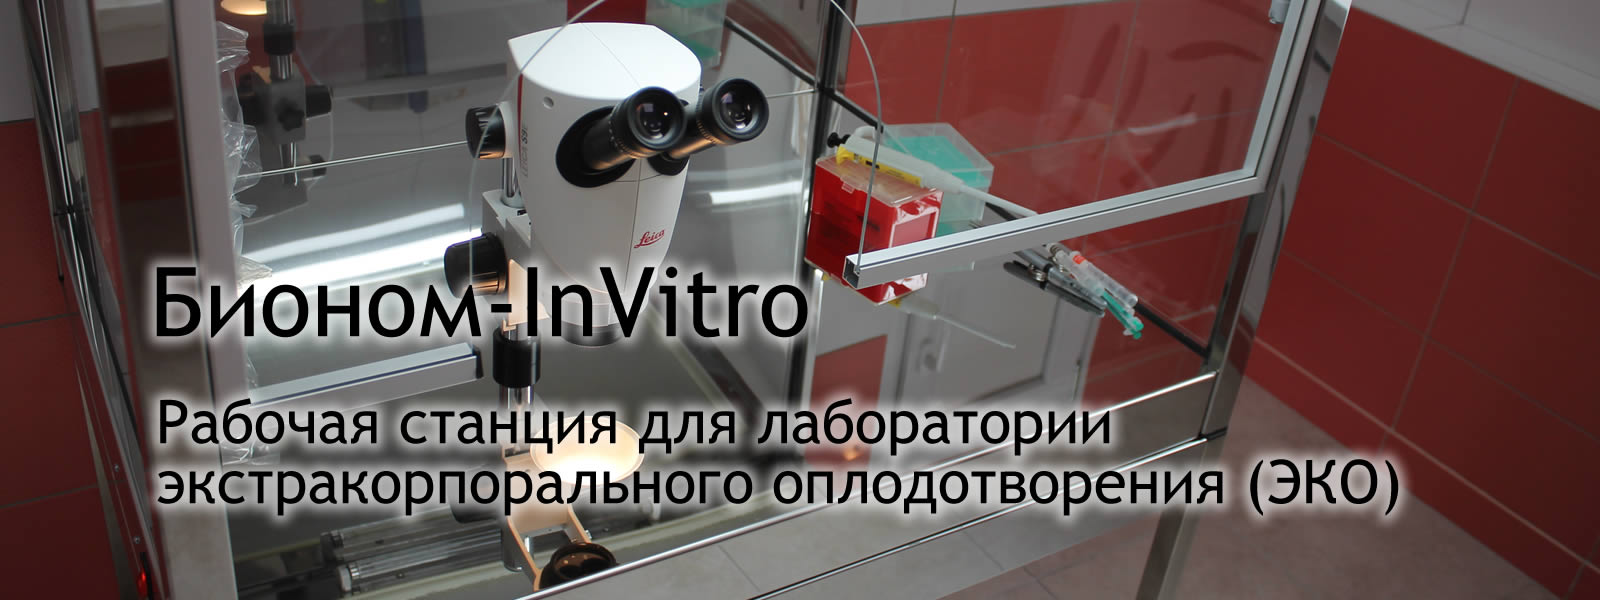 Оборудование для ЭКО Бионом-InVitro